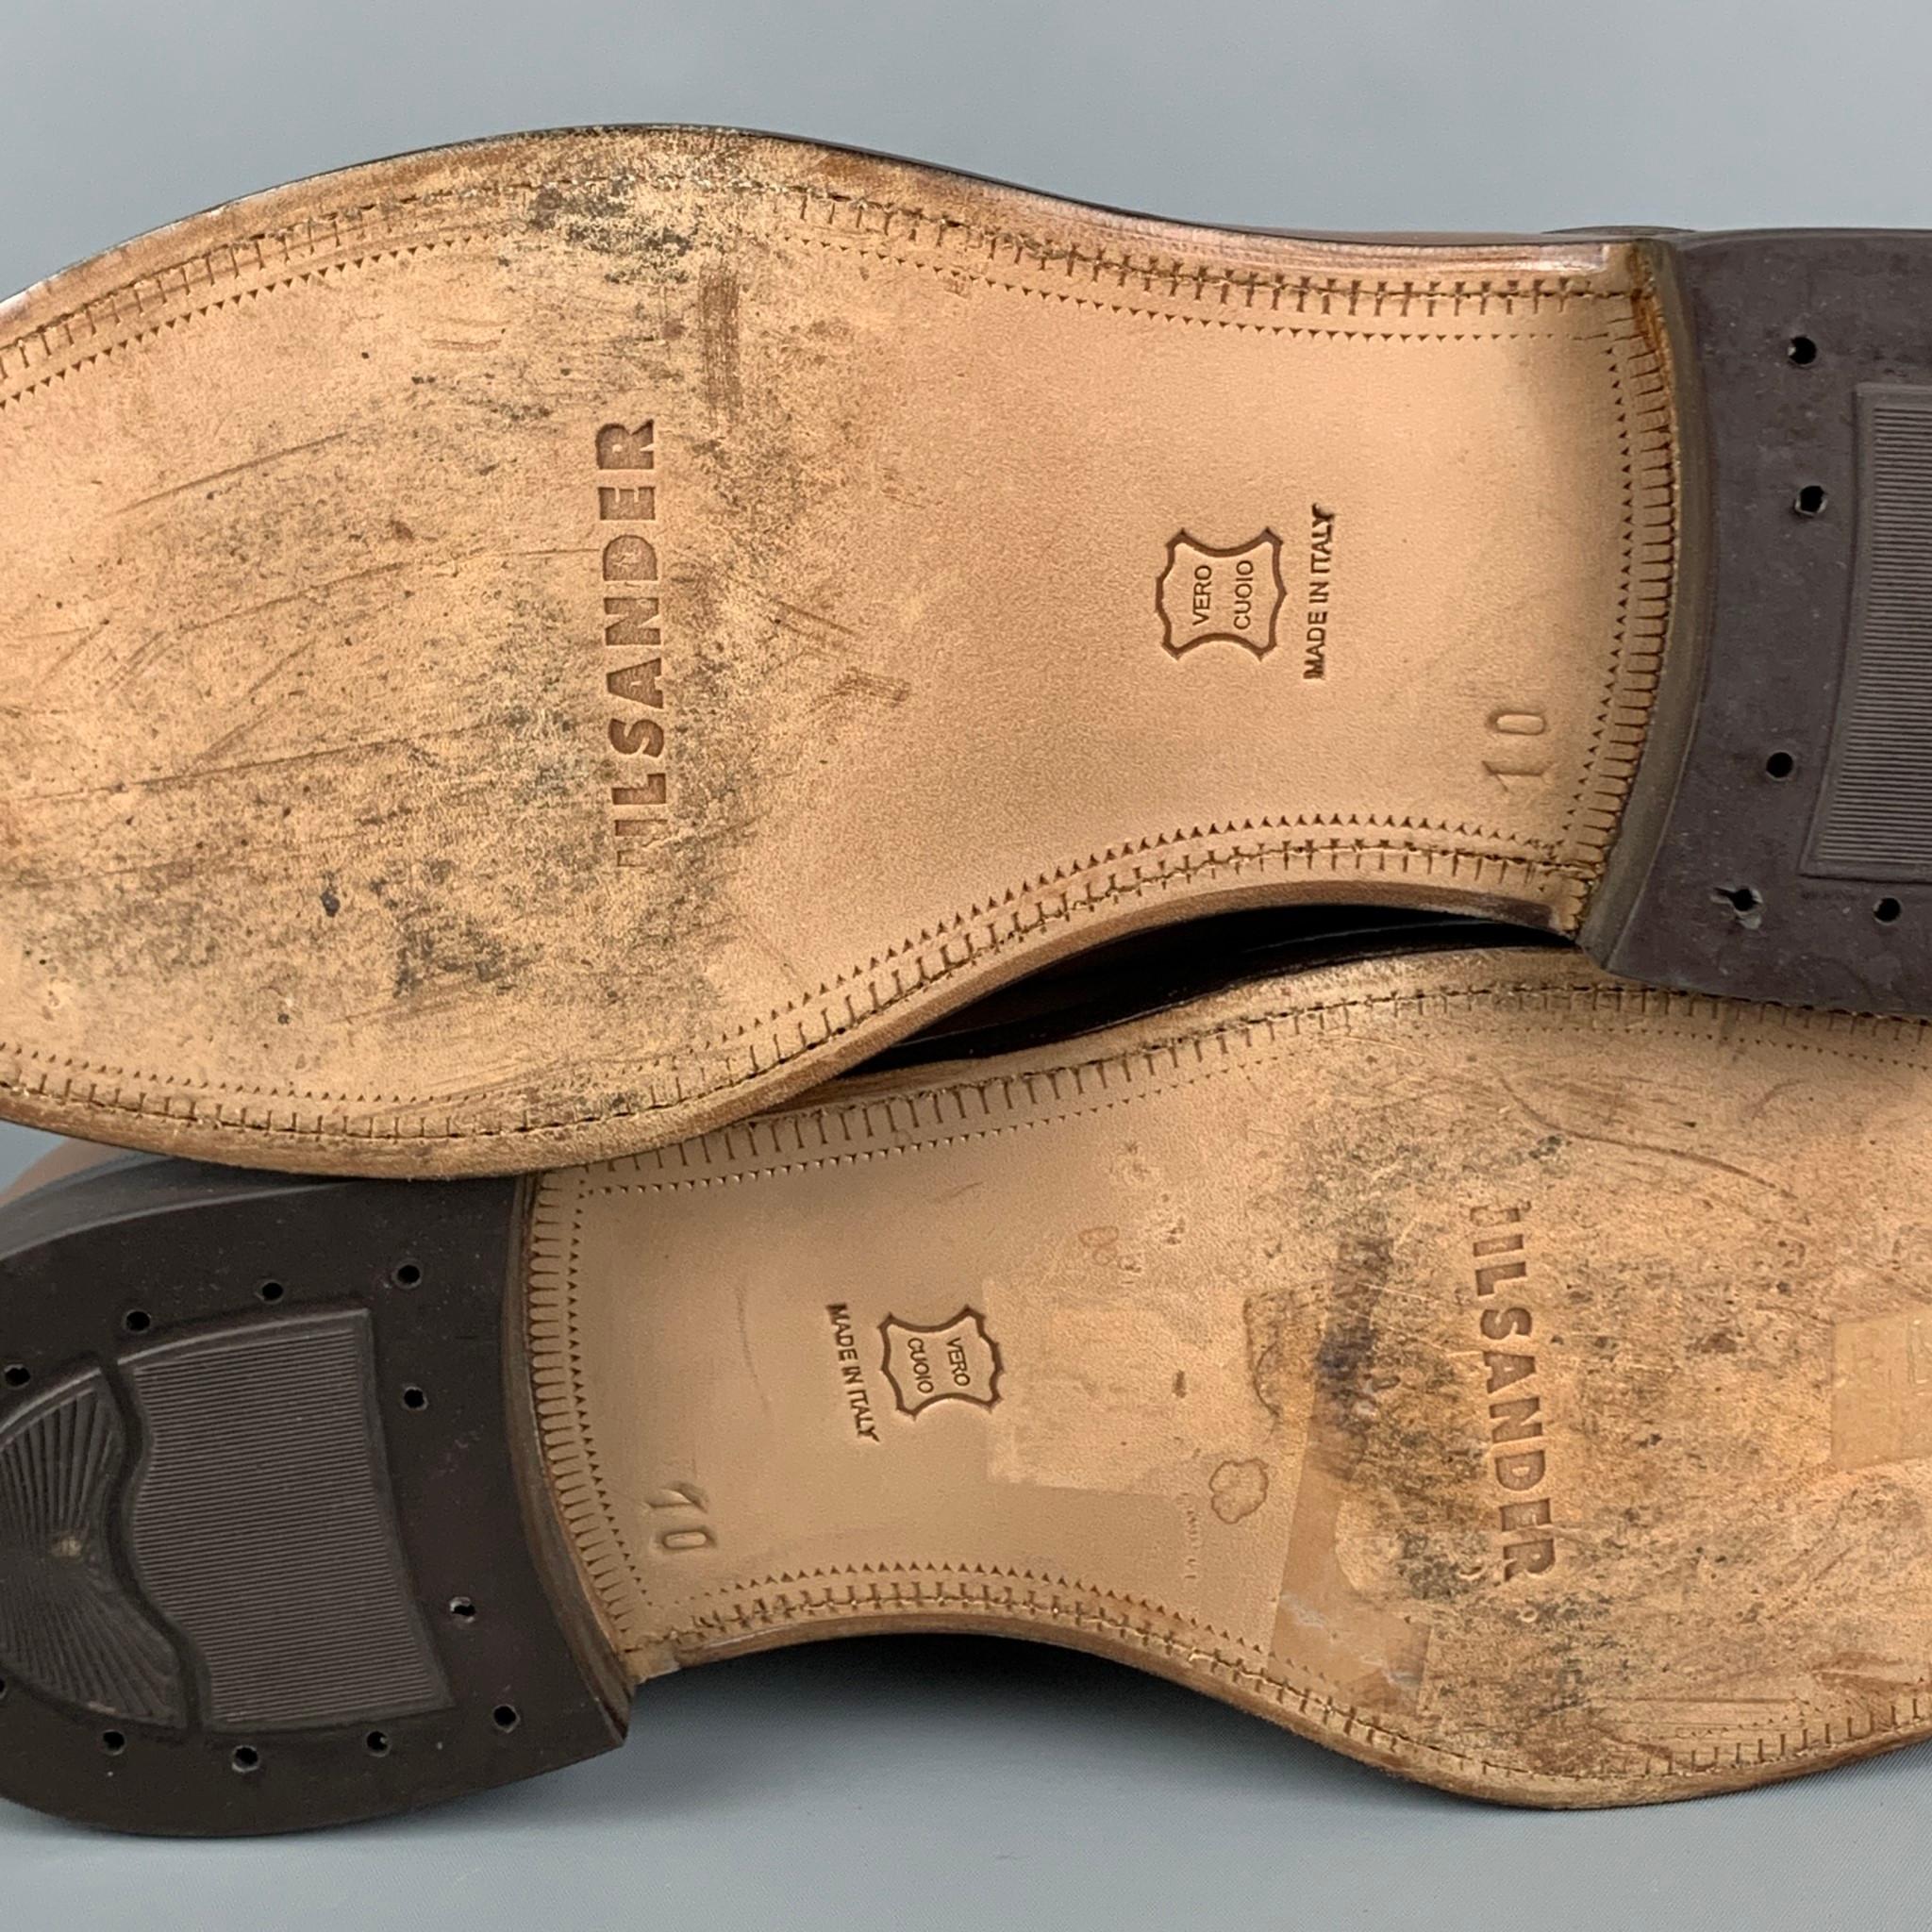 JIL SANDER x RAF SIMONS Size 11 Tan Leather Laceless Dress Shoes 1